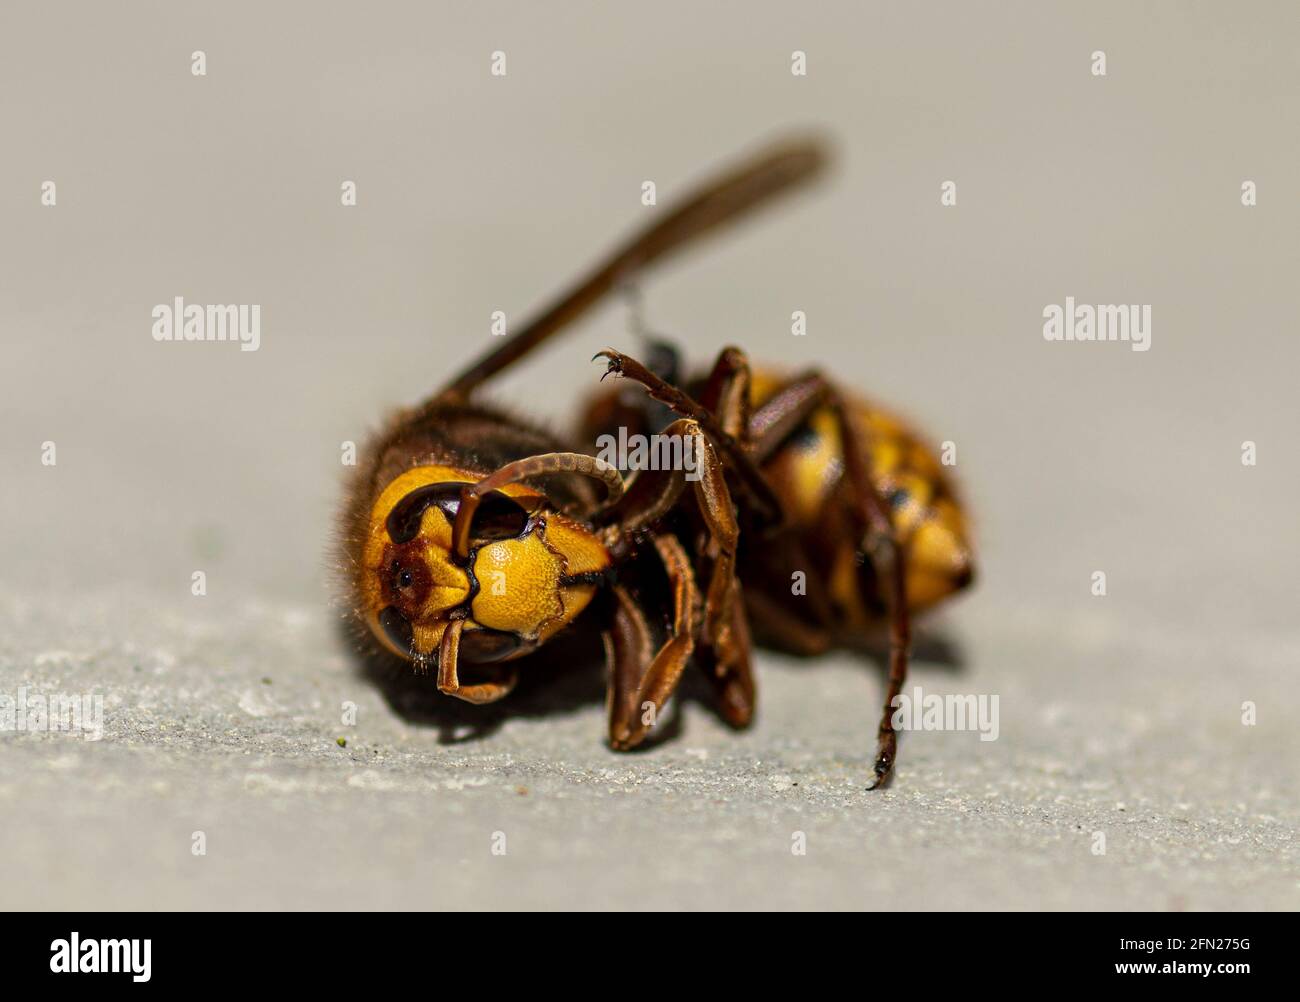 Dead Hornet on paving slab,  close-up of hornet, tote Hornisse, close-up on hornets head, European hornet Stock Photo